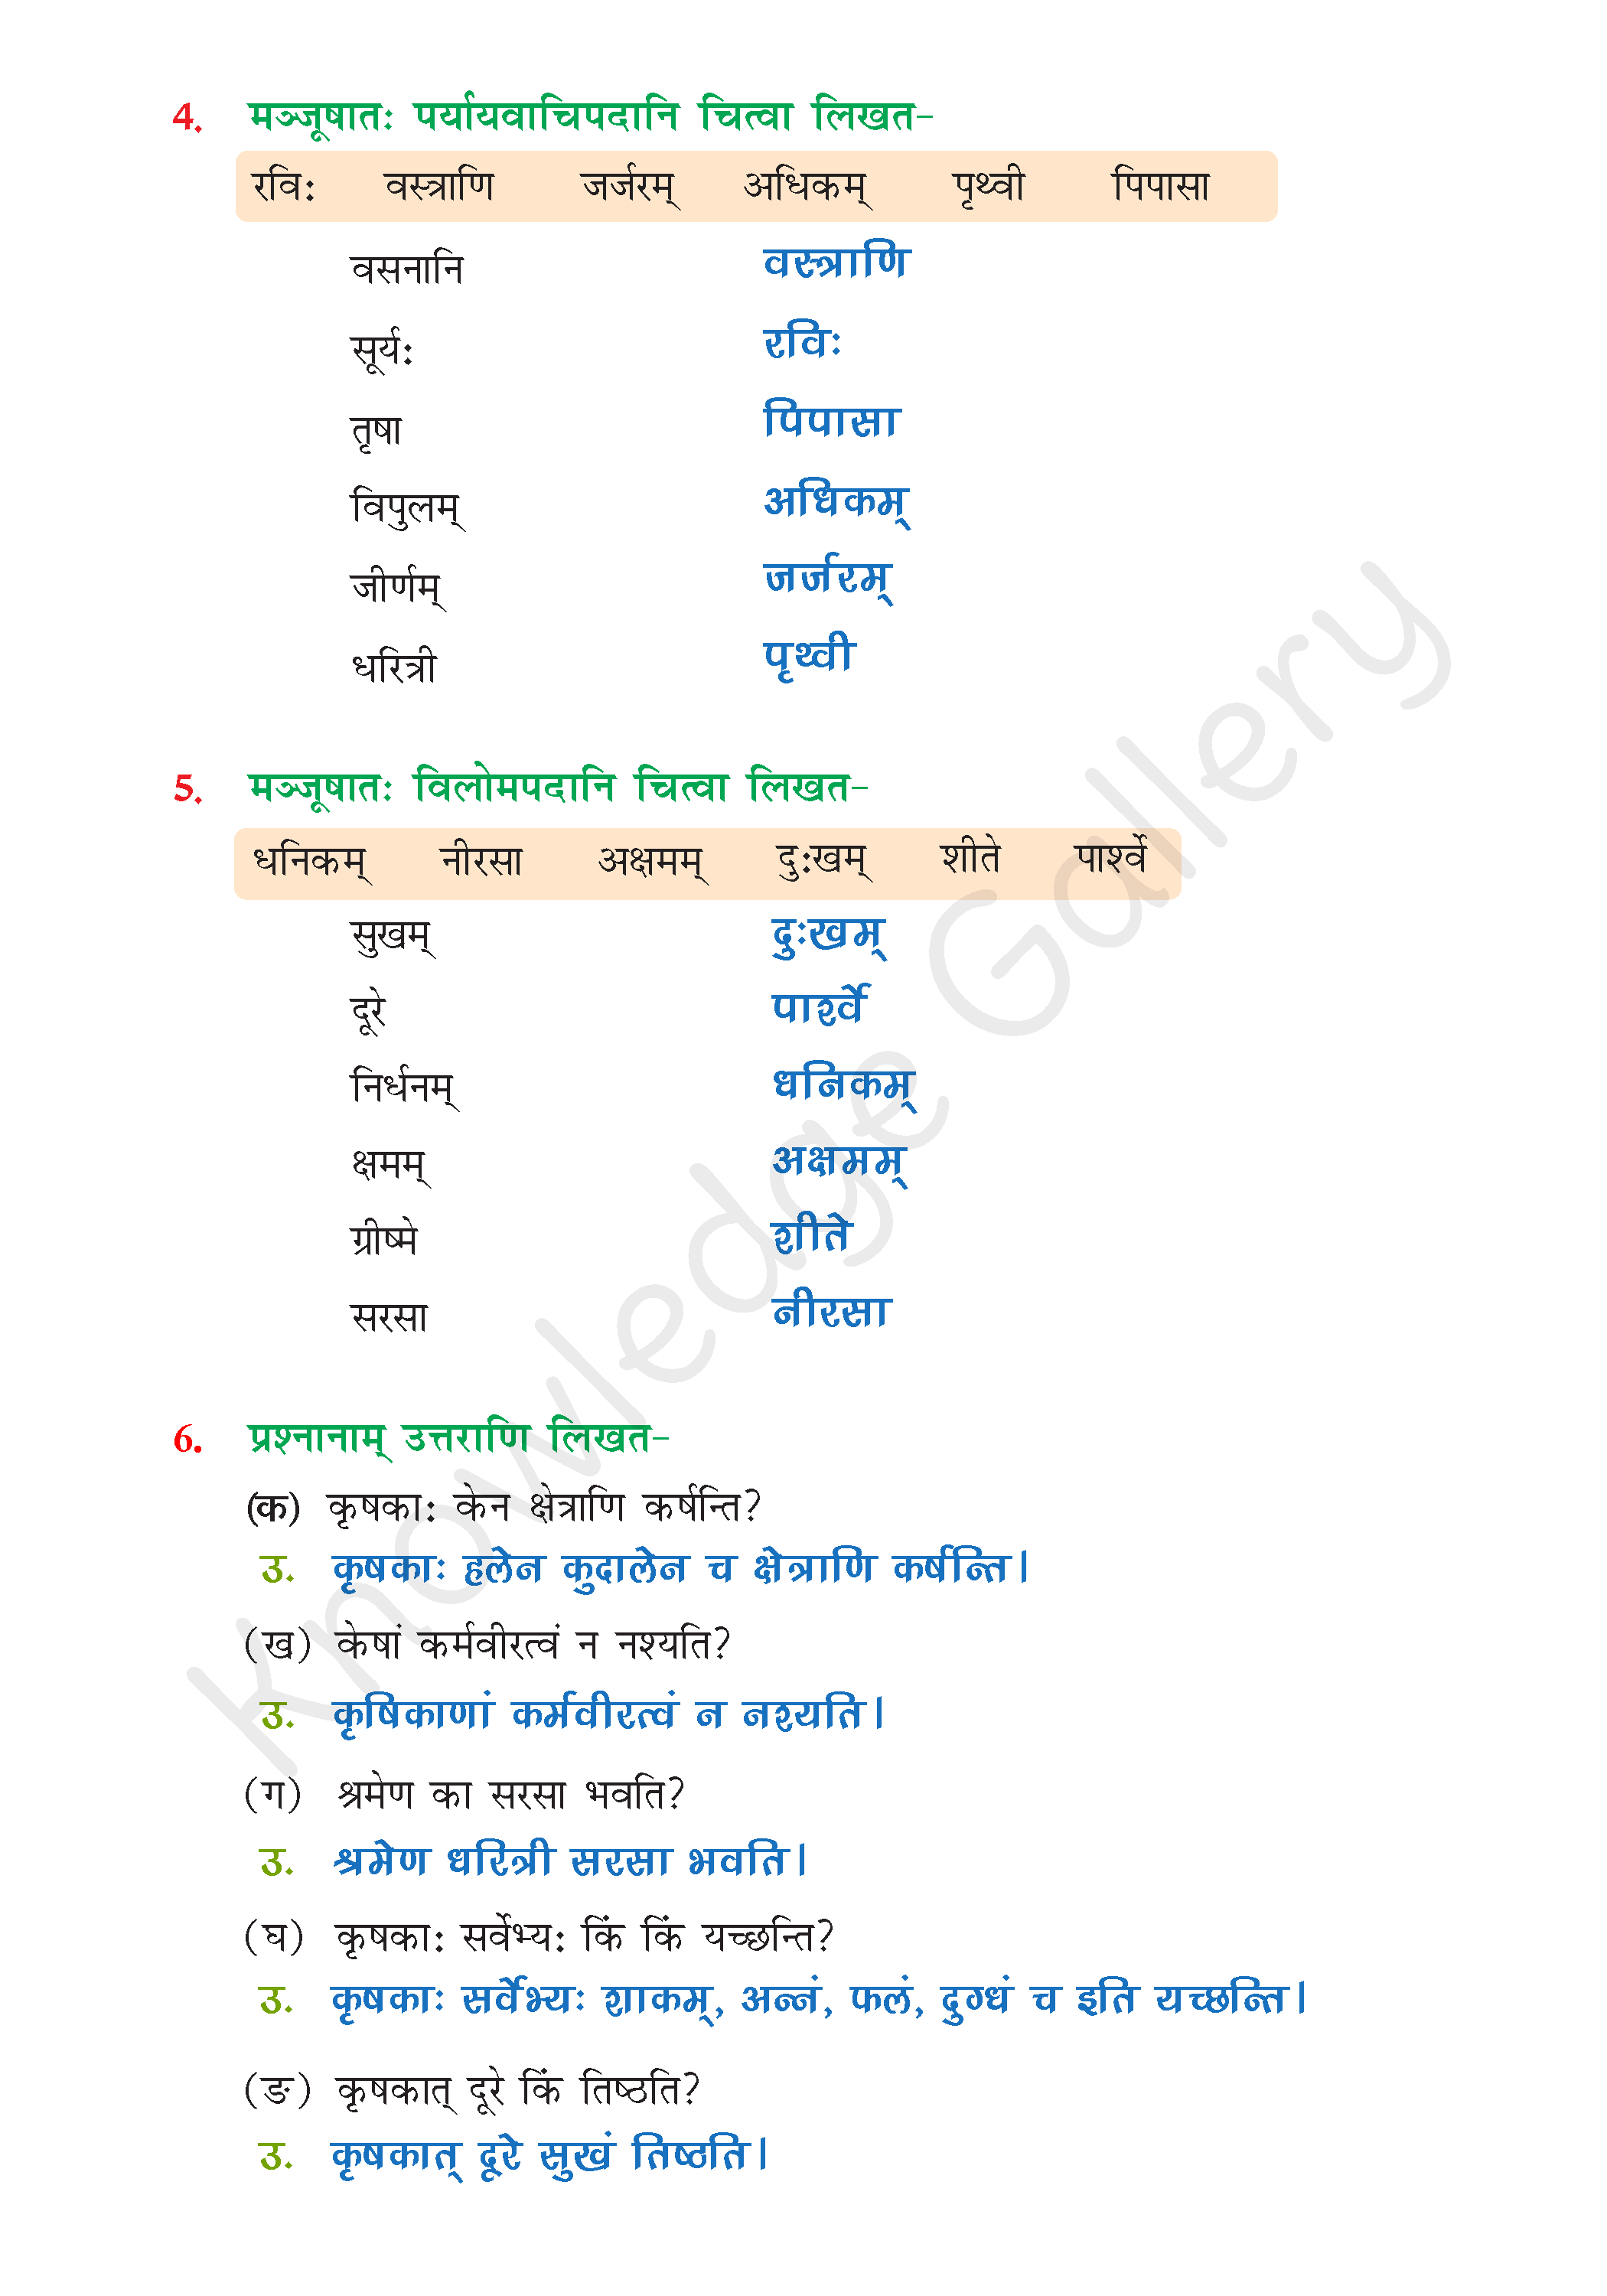 NCERT Solution For Class 6 Sanskrit Chapter 10 part 5